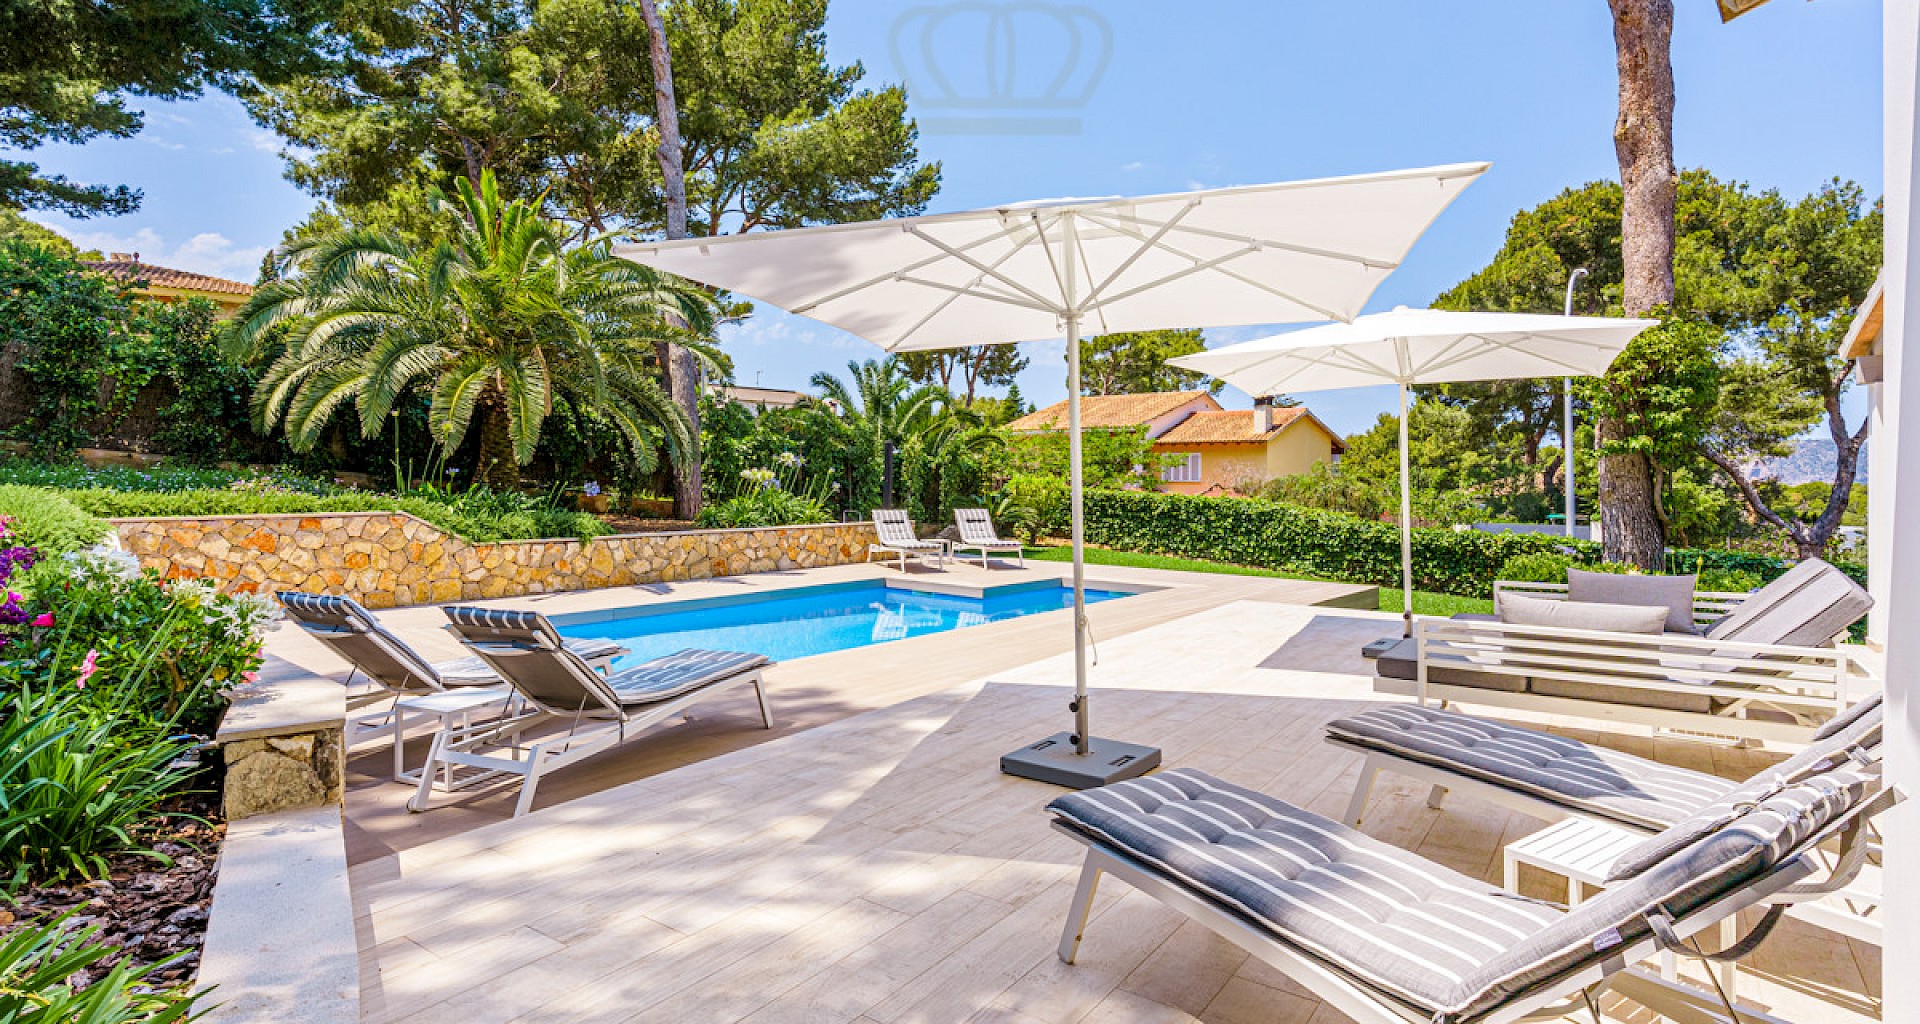 KROHN & LUEDEMANN Preciosa villa familiar en Santa Ponsa con piscina y jardín 